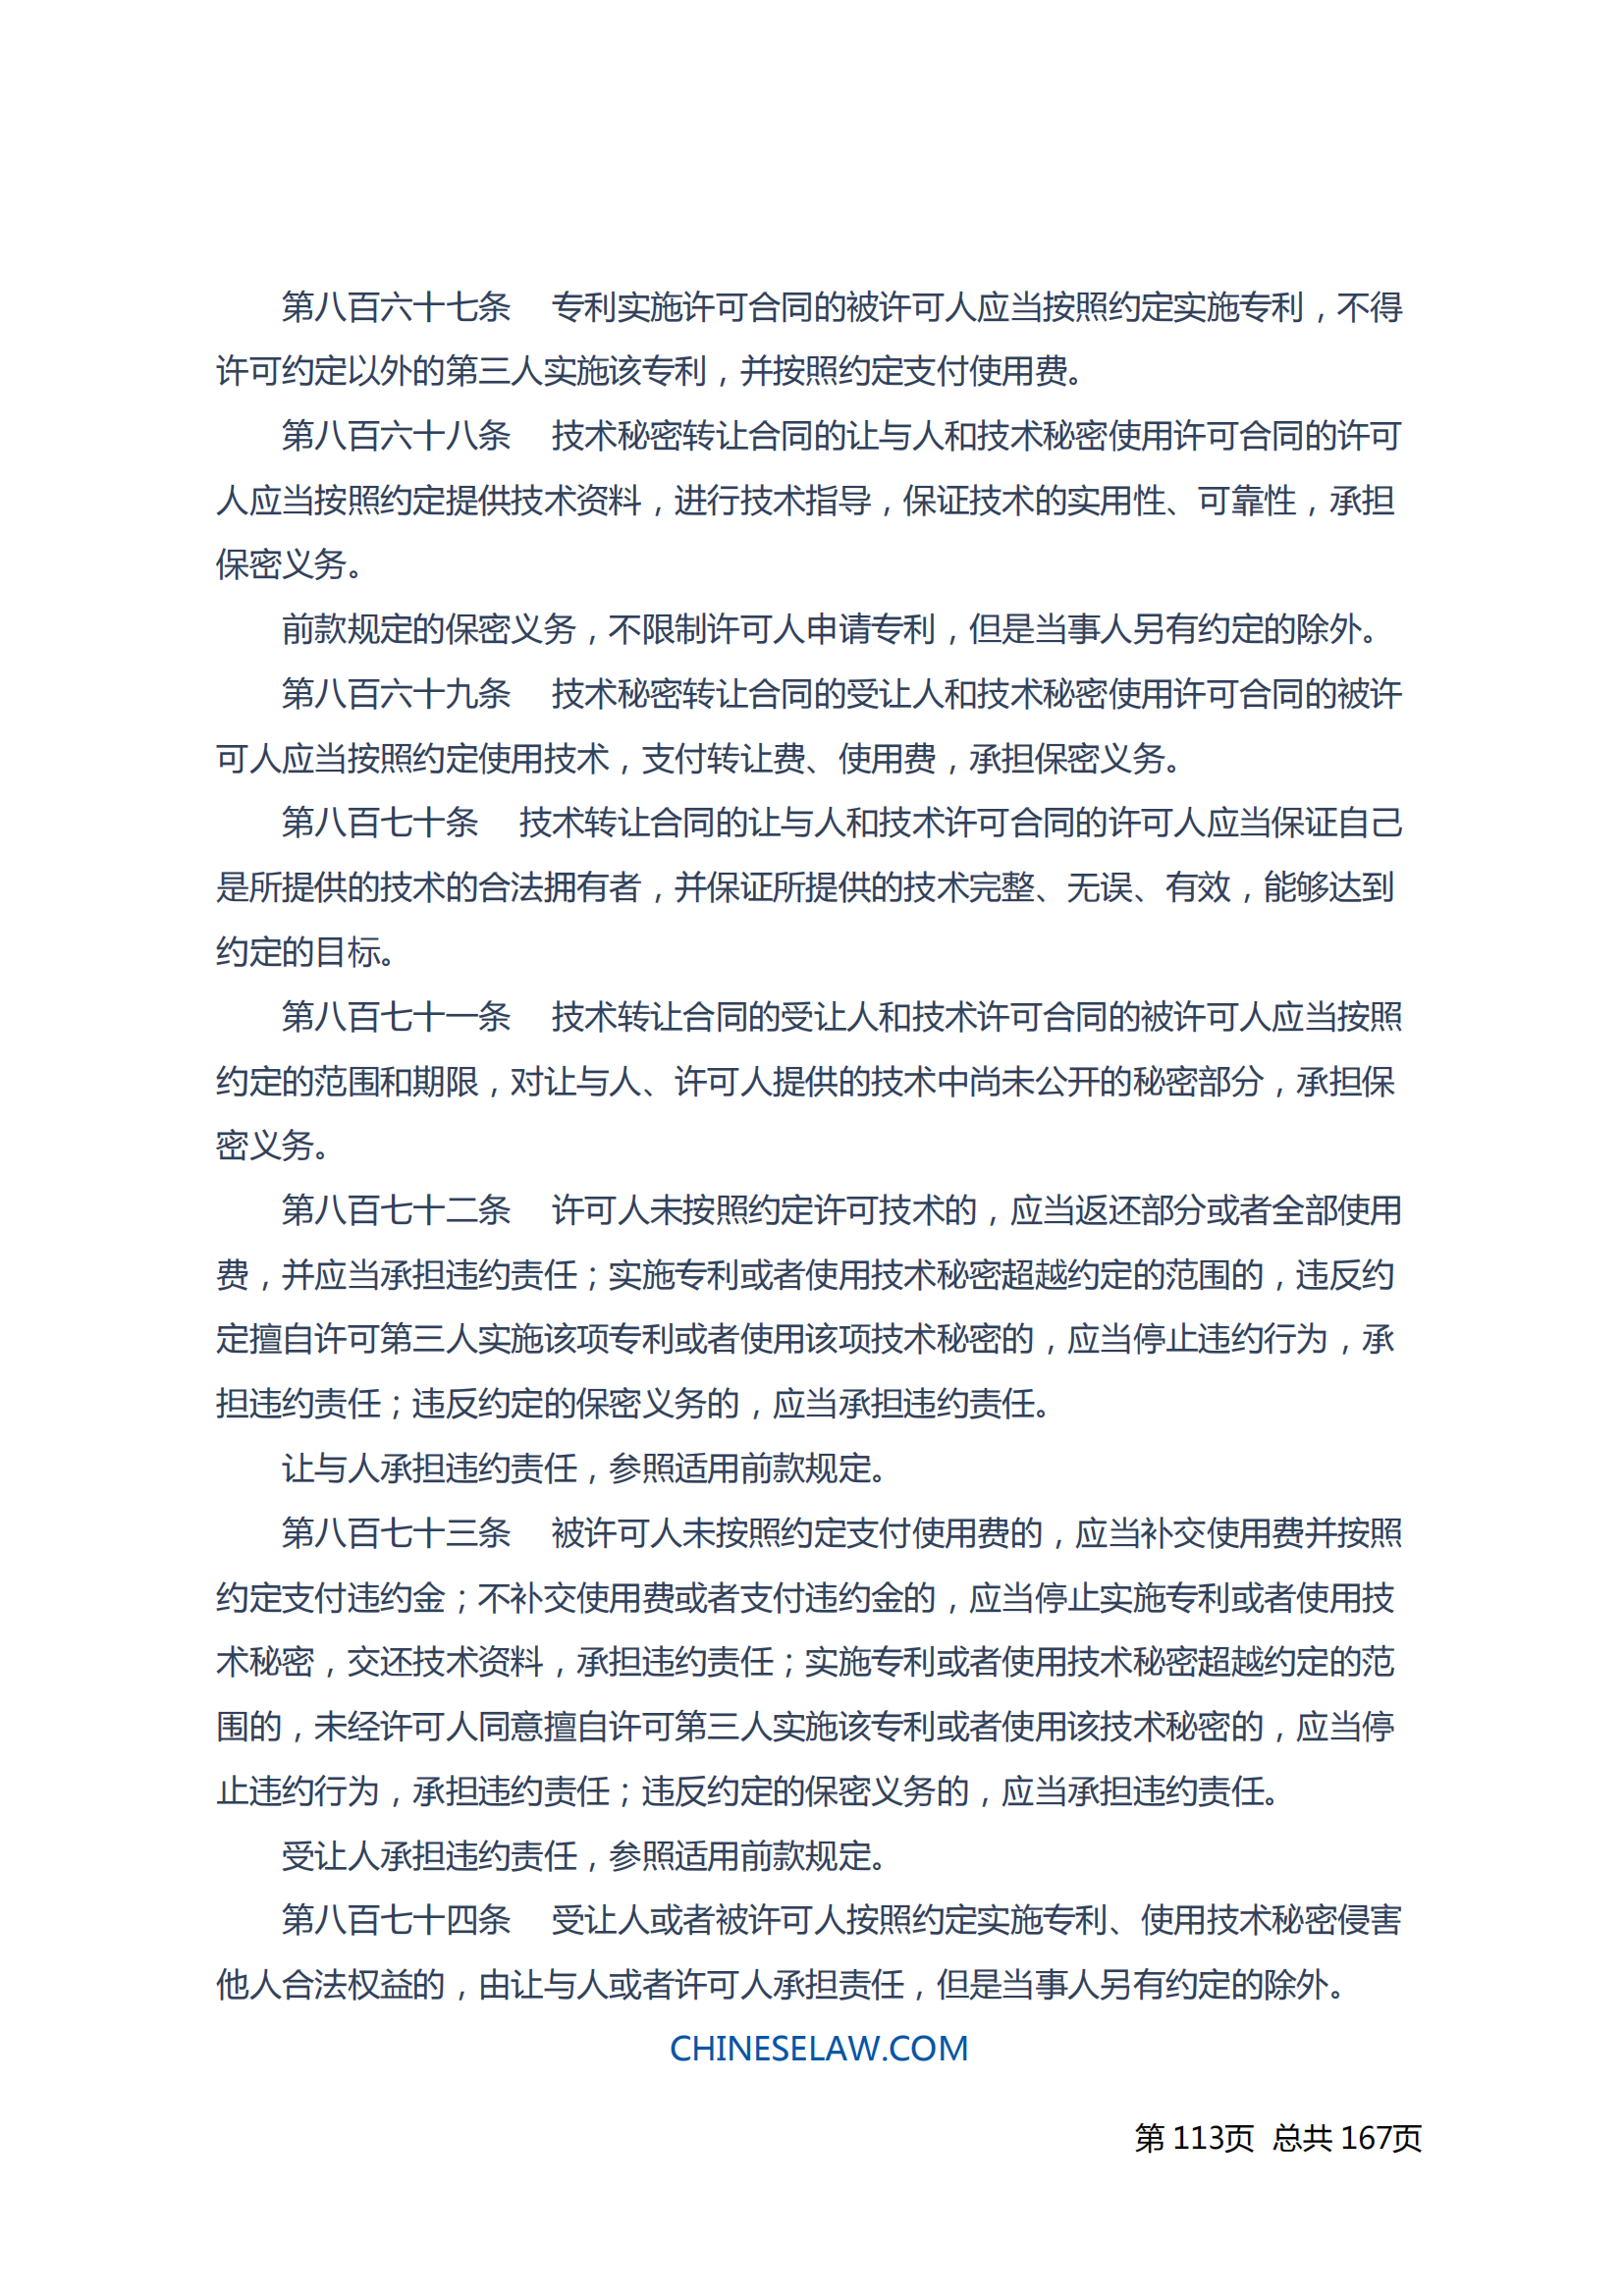 中华人民共和国民法典_112